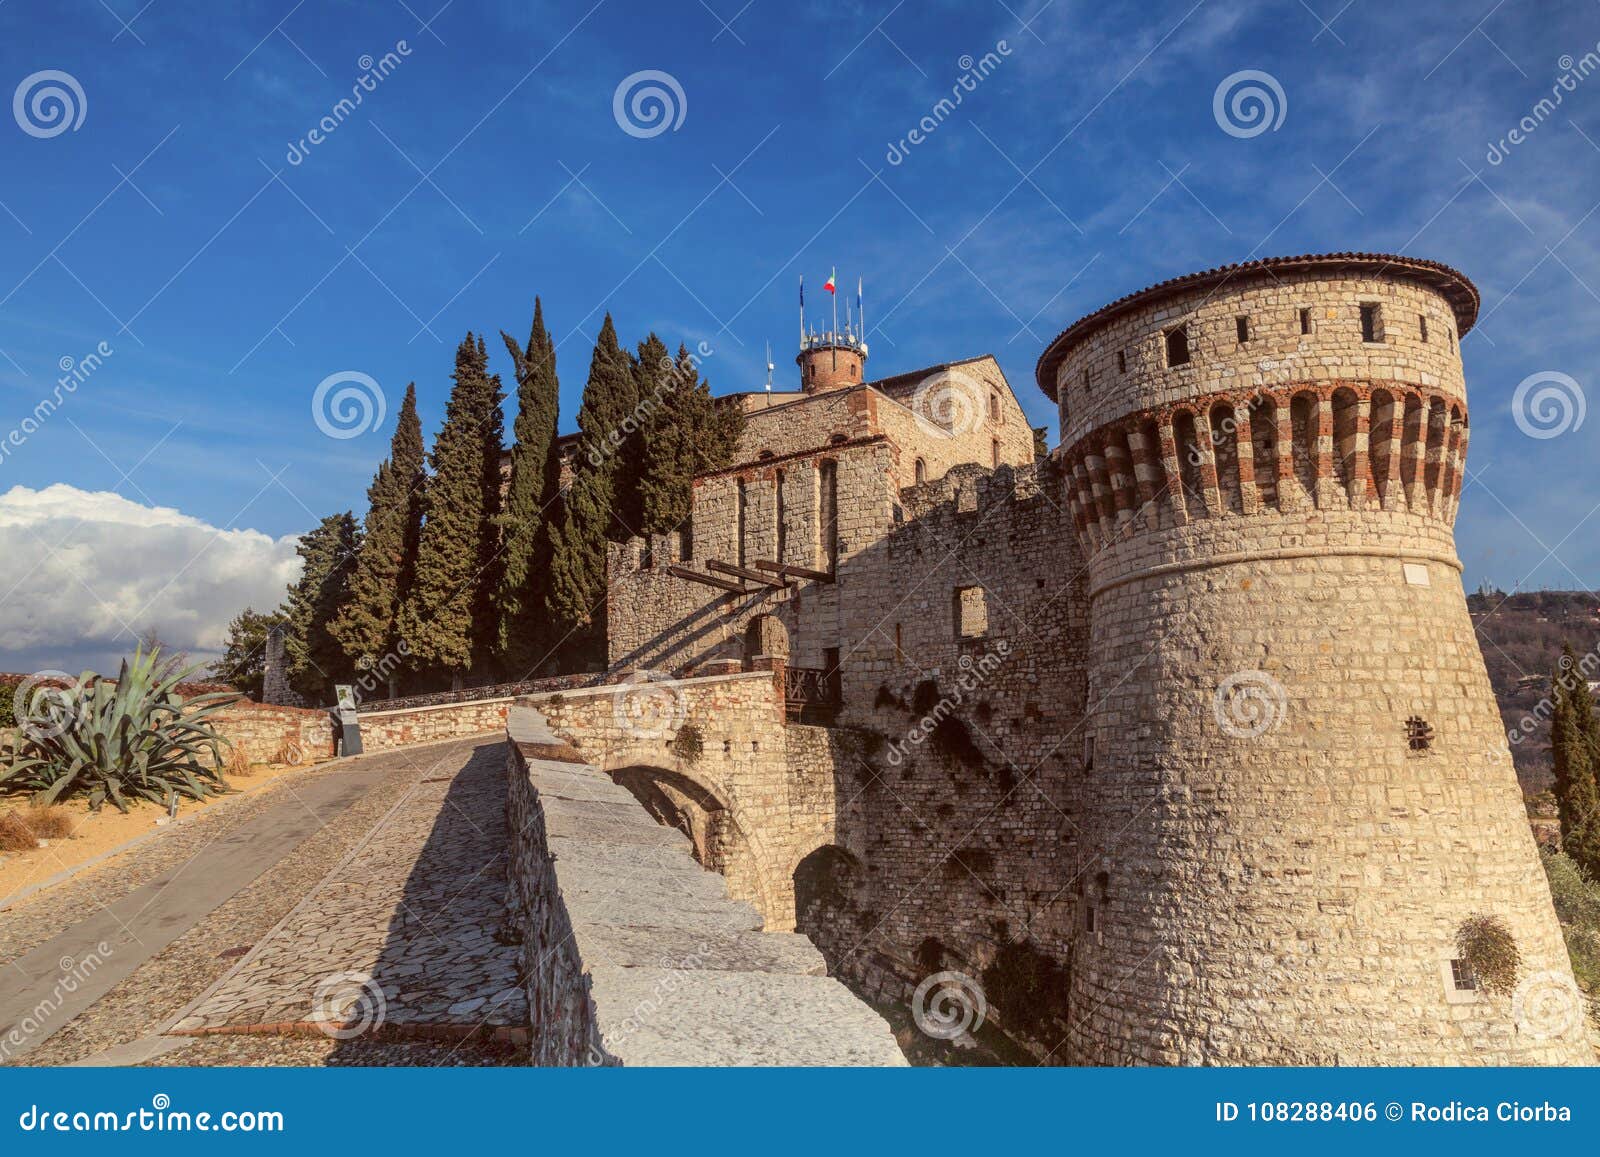 roads to castle on the hill cidneo brescia